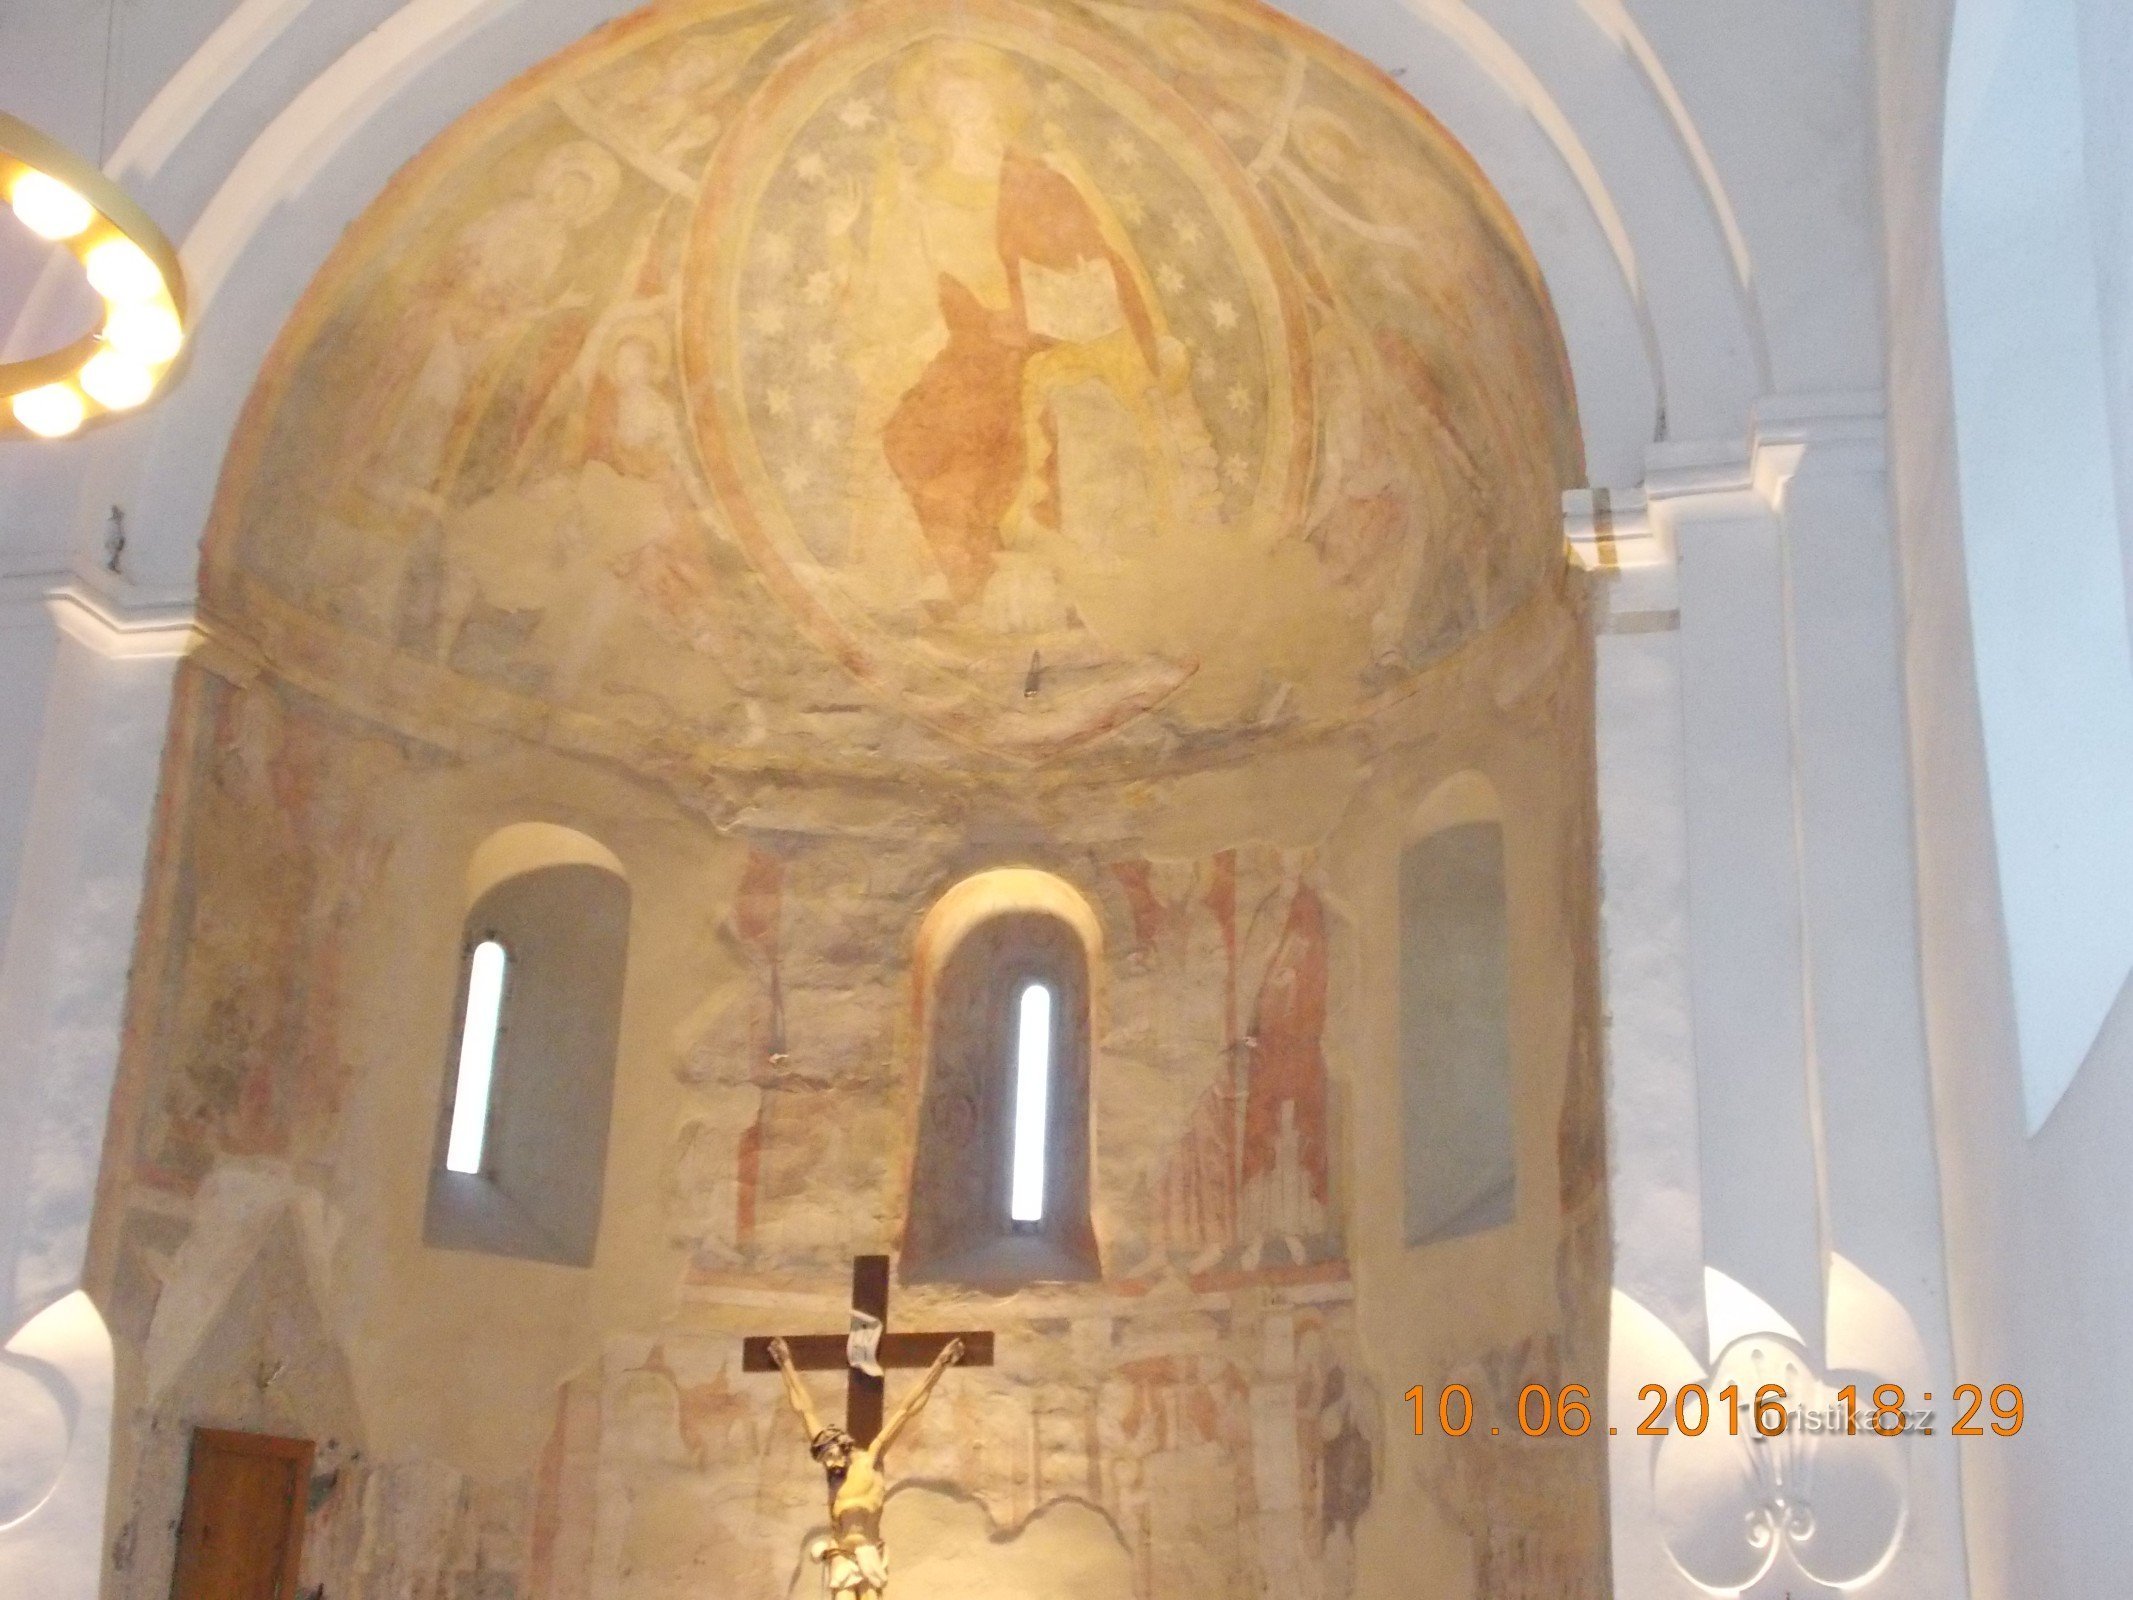 Những bức bích họa theo phong cách Romanesque trong apse